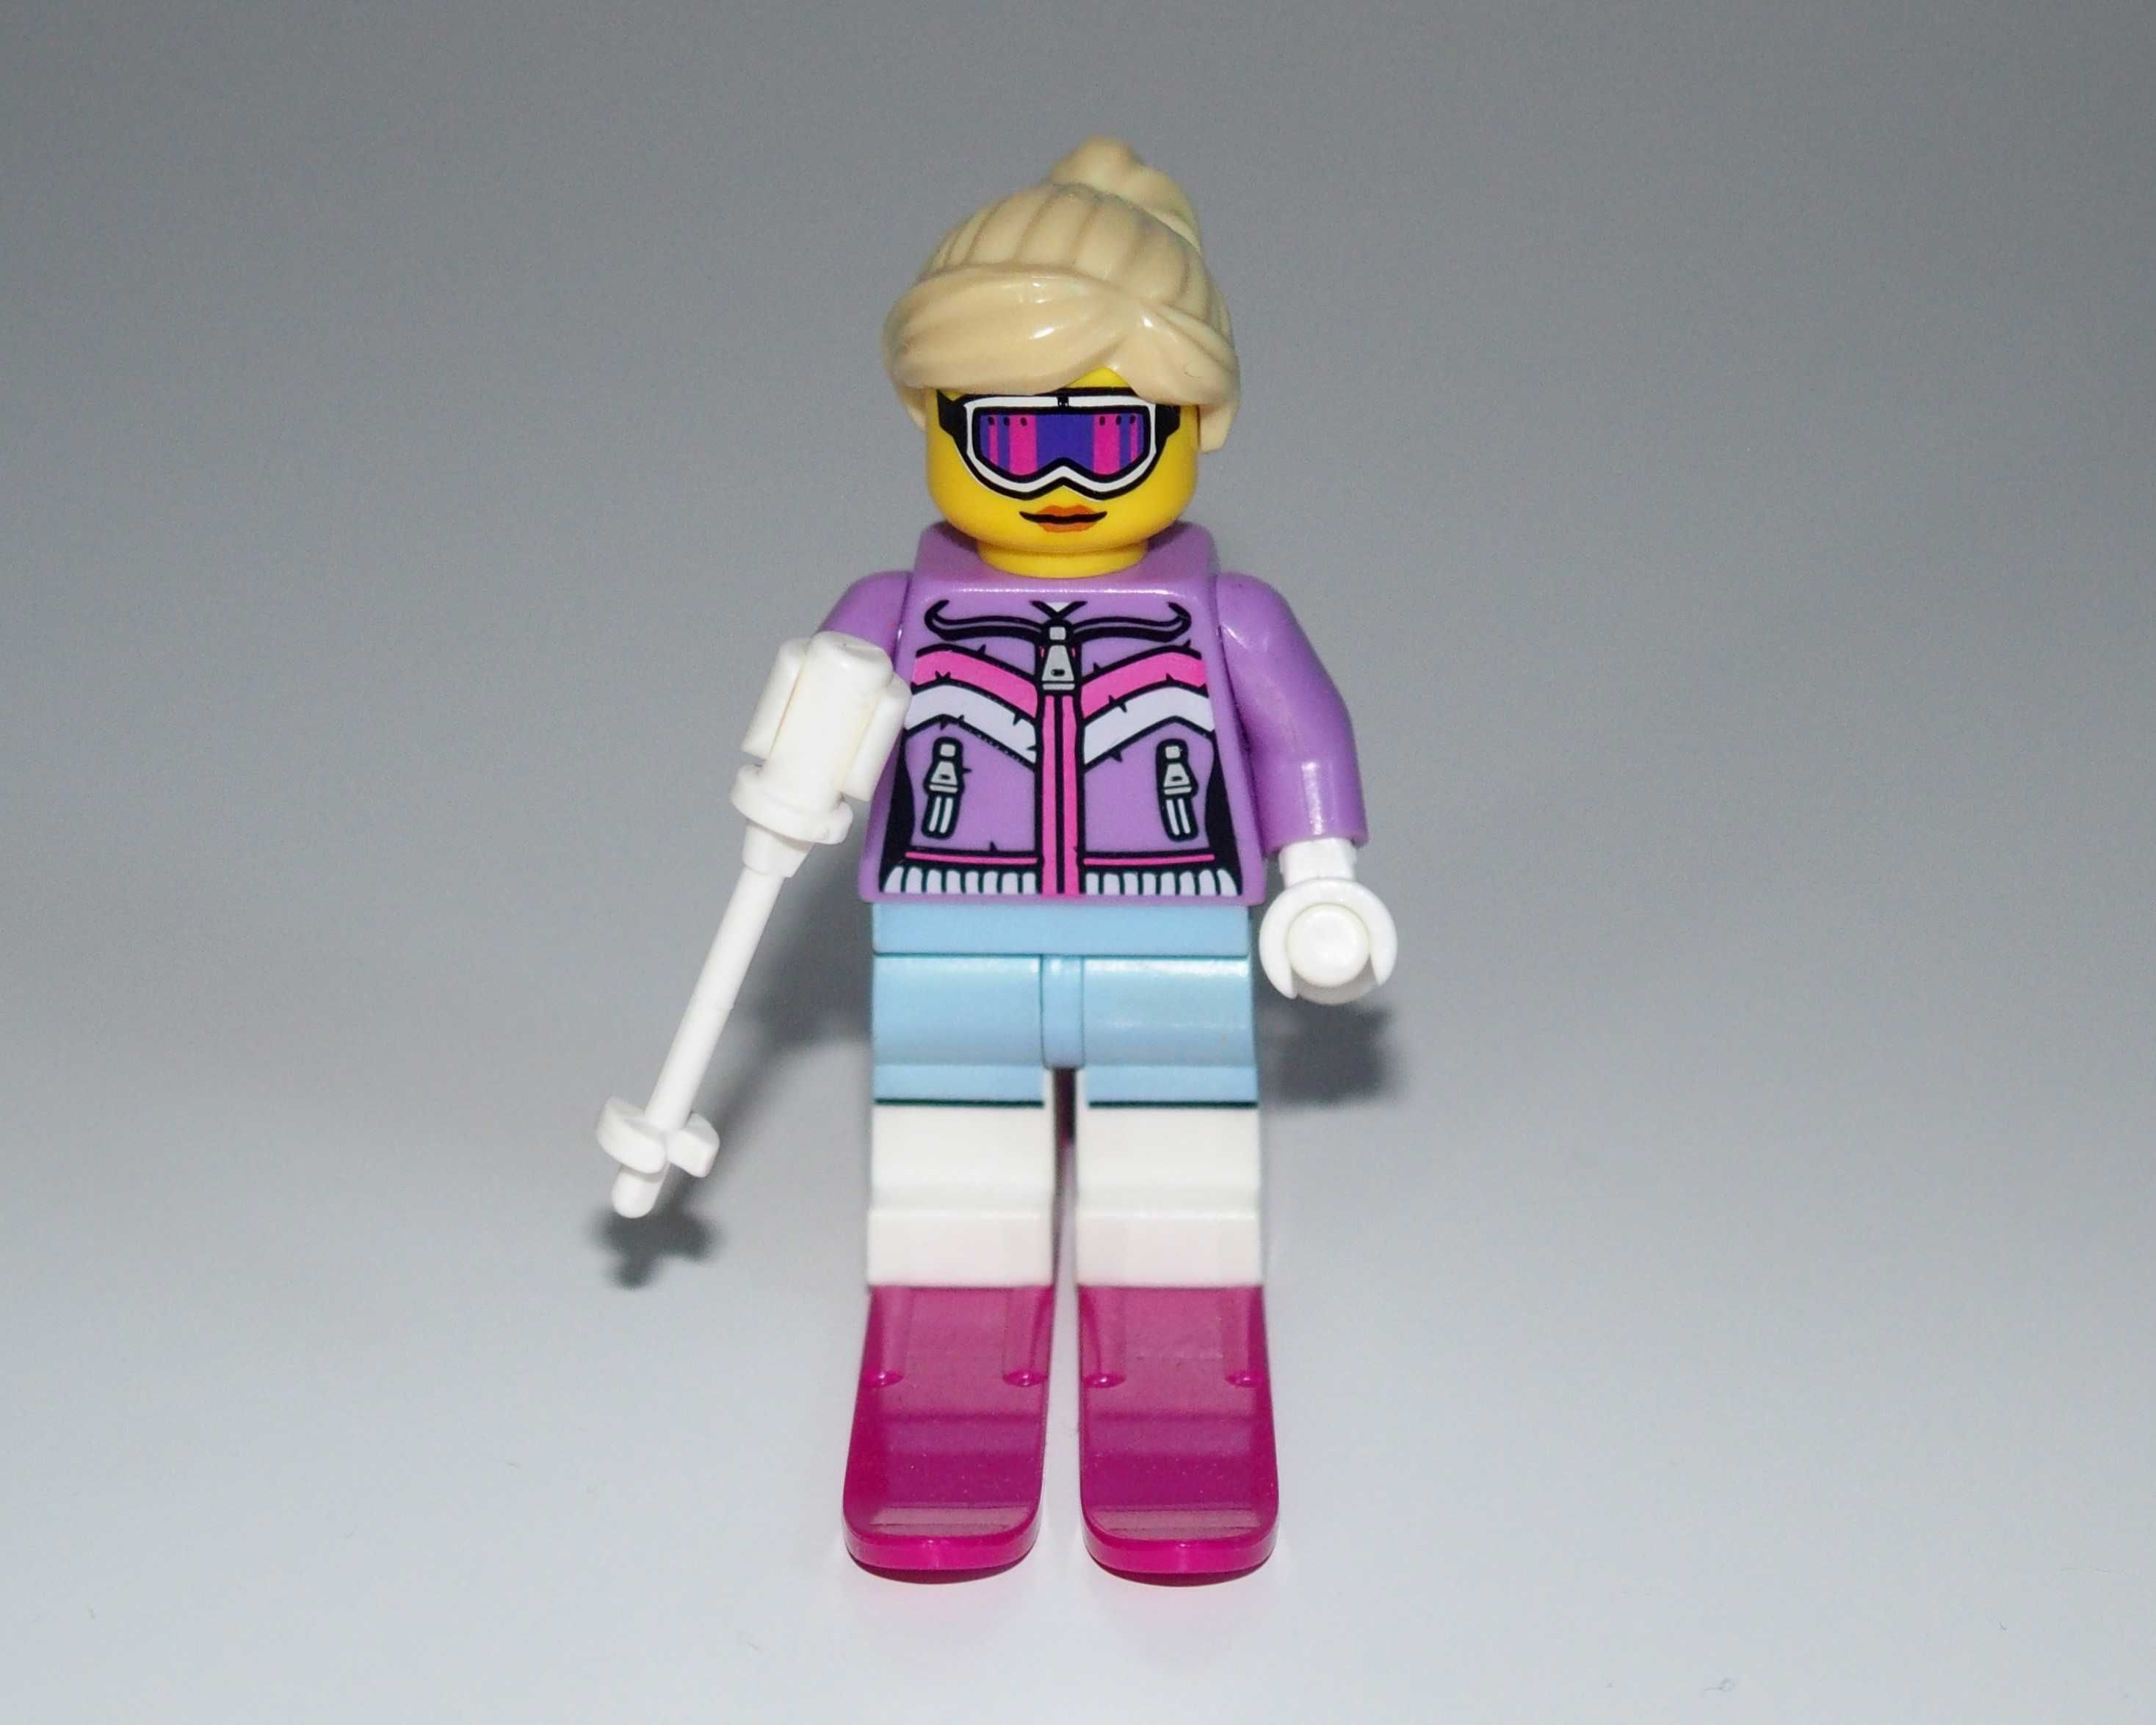 Minifigurka LEGO - Narciarka / Downhill skier - figurka seria 8